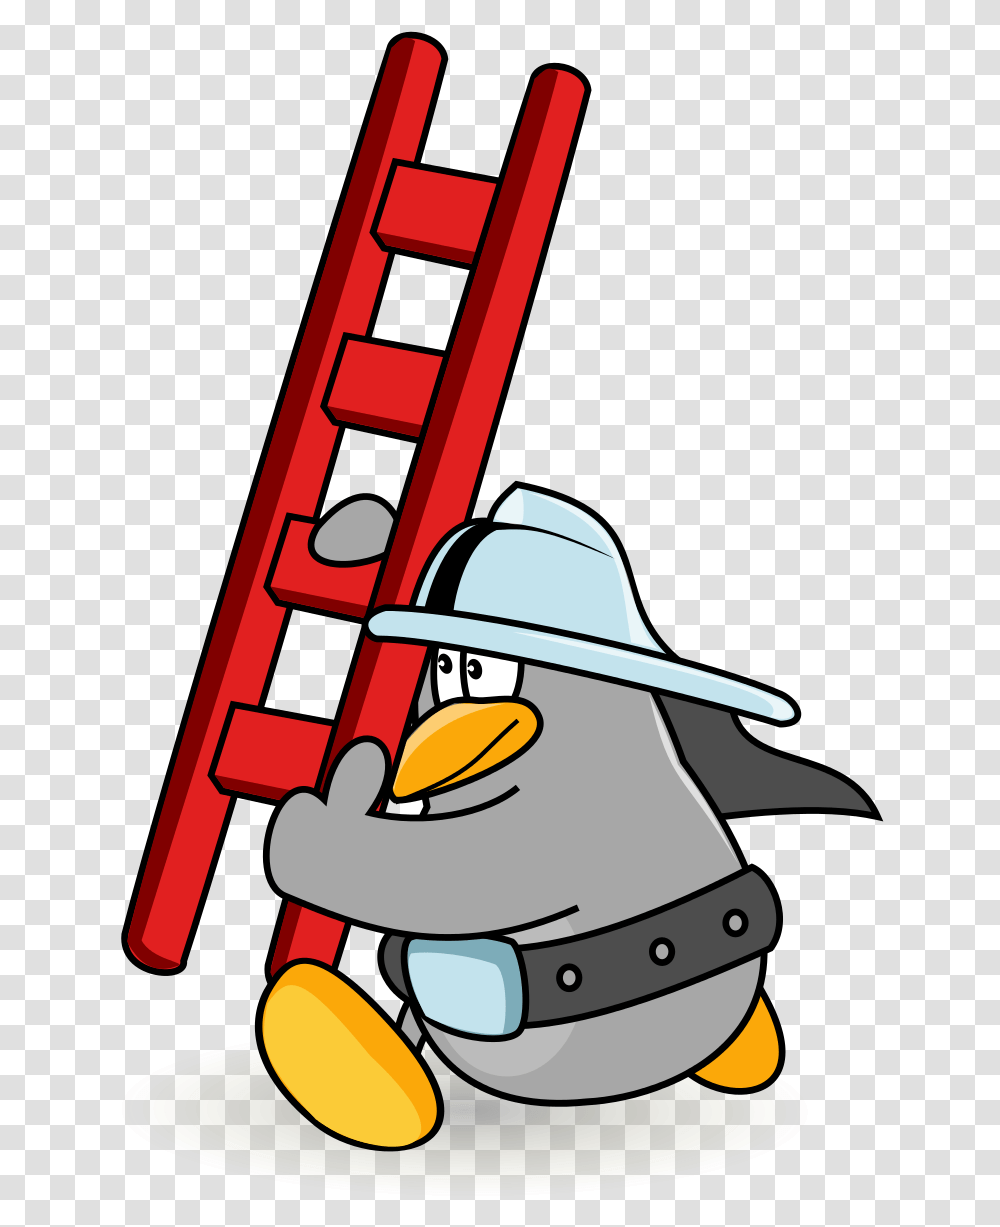 Firefighter Cartoon Ladder Clipart Download Cartoon Ladder, Fireman, Helmet, Apparel Transparent Png